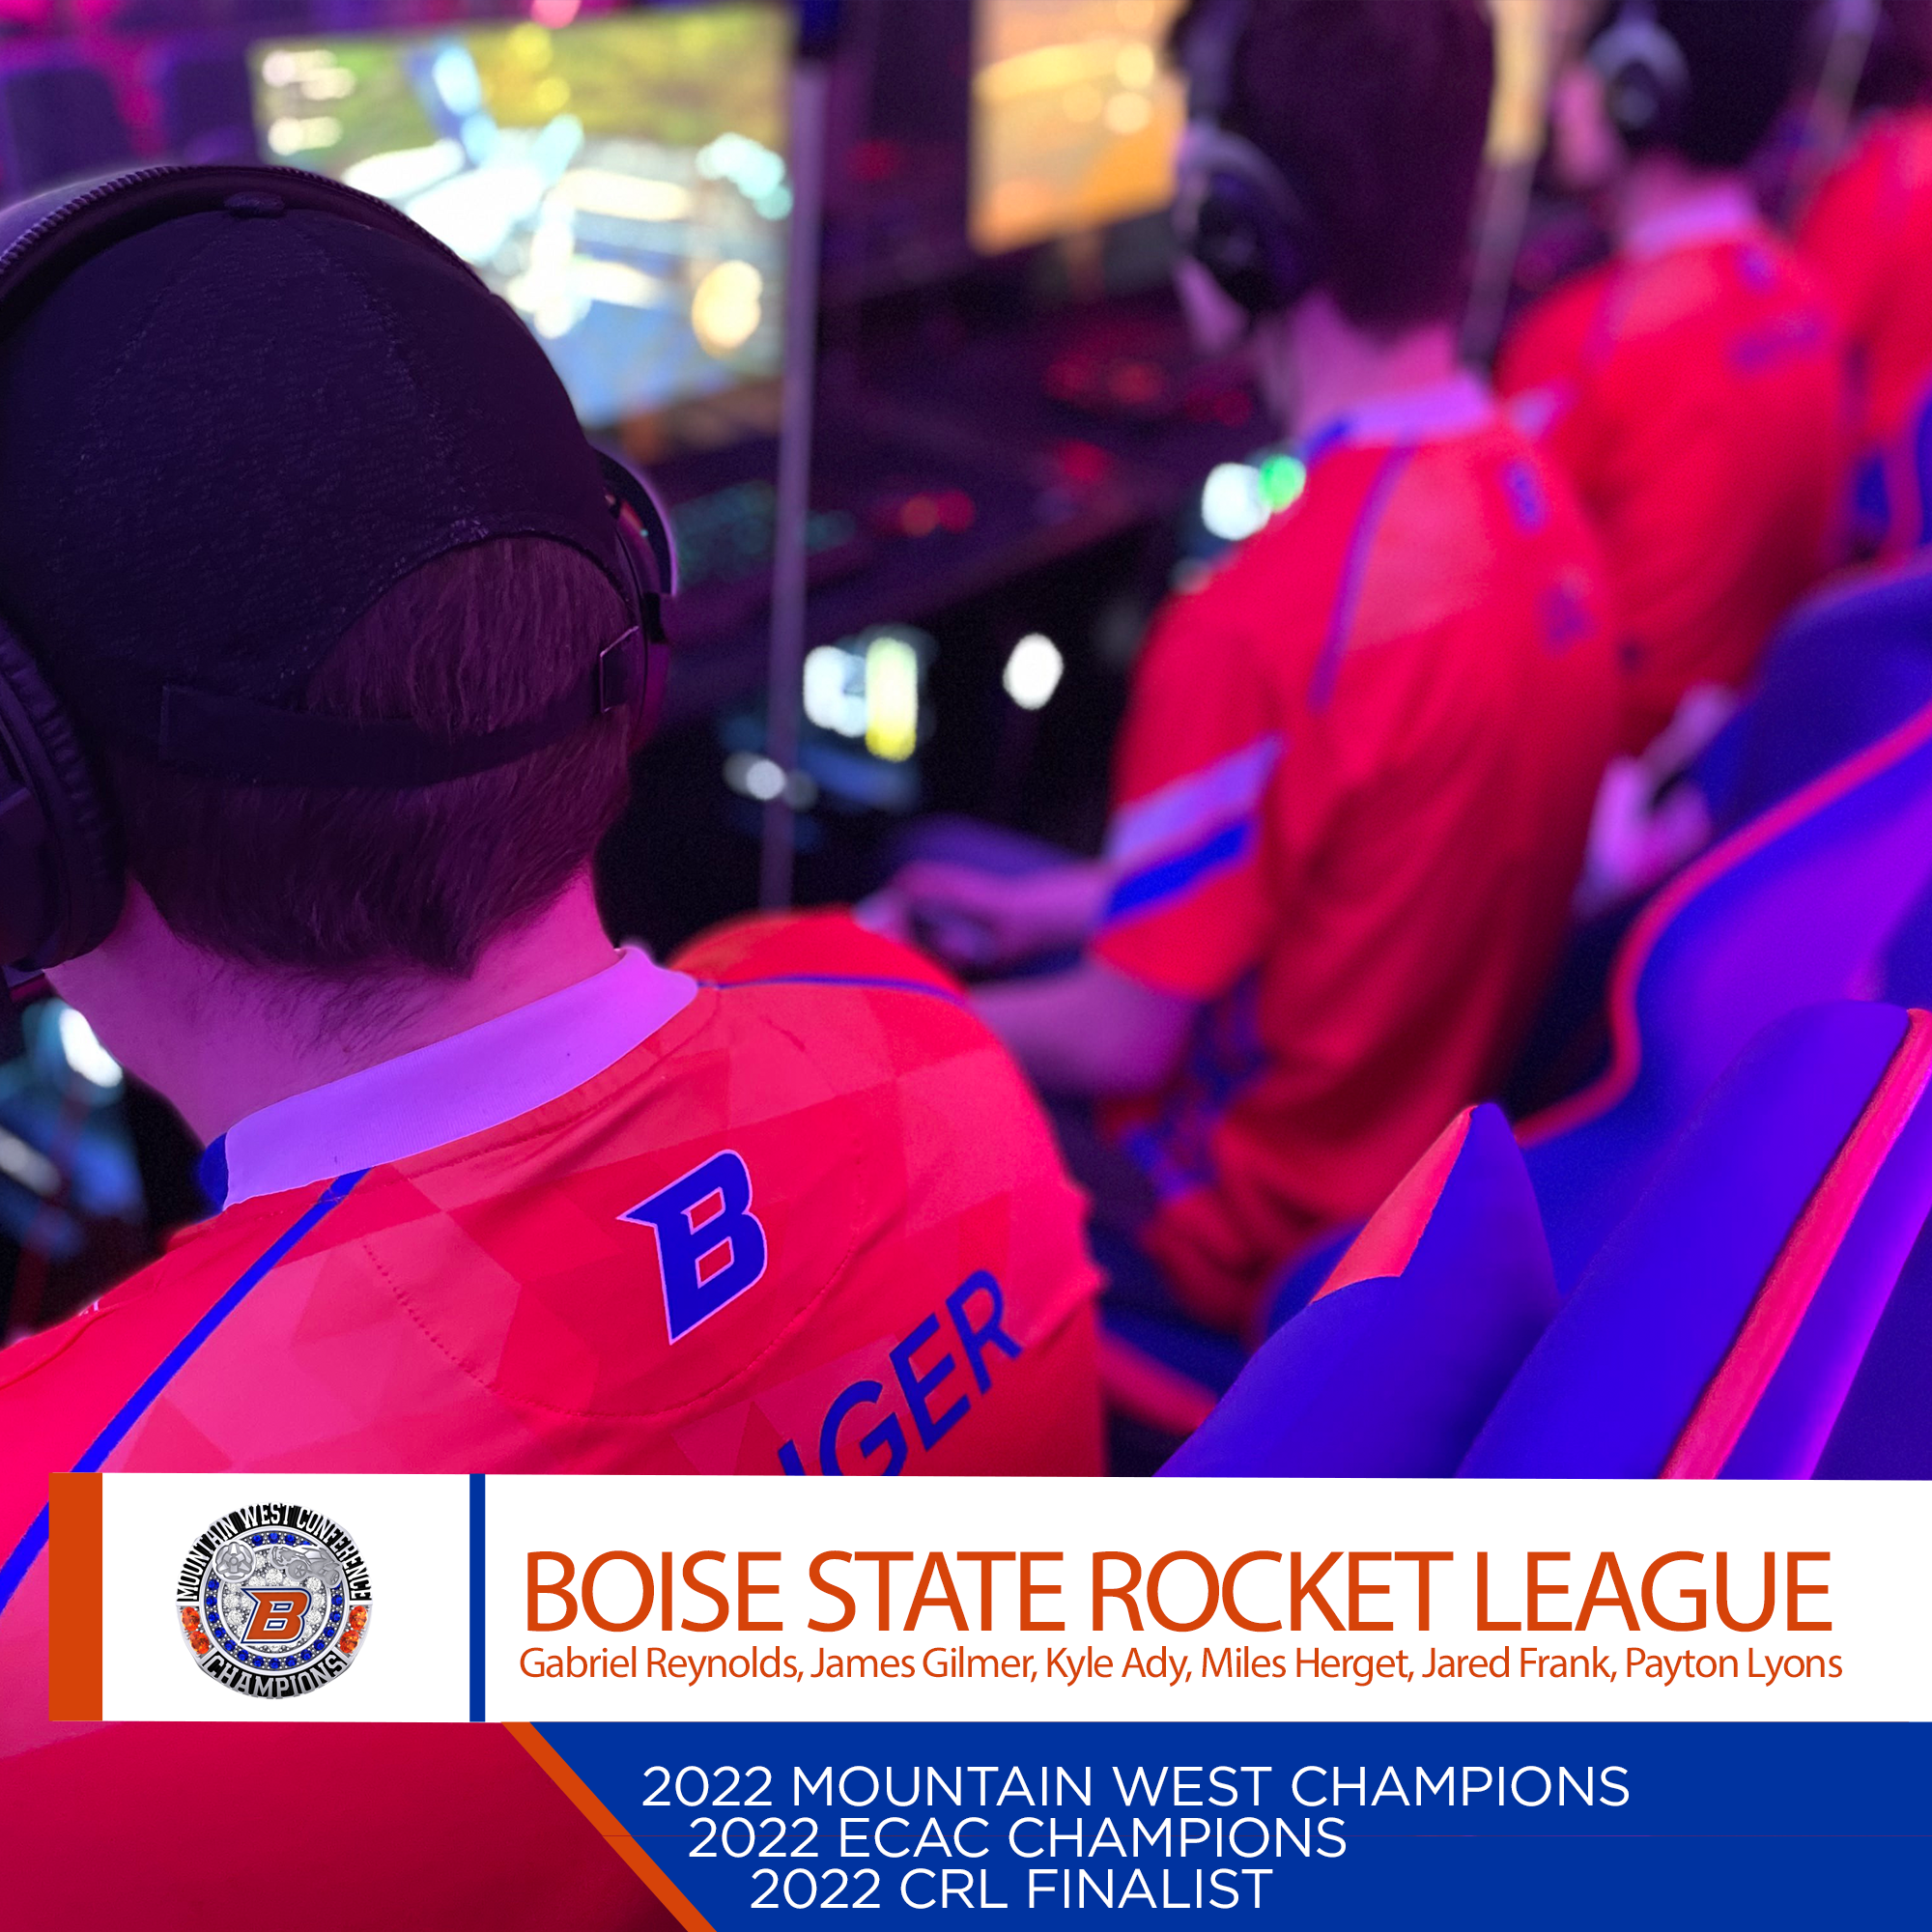 Rocket League Competitive Tournaments - Rocket League Support